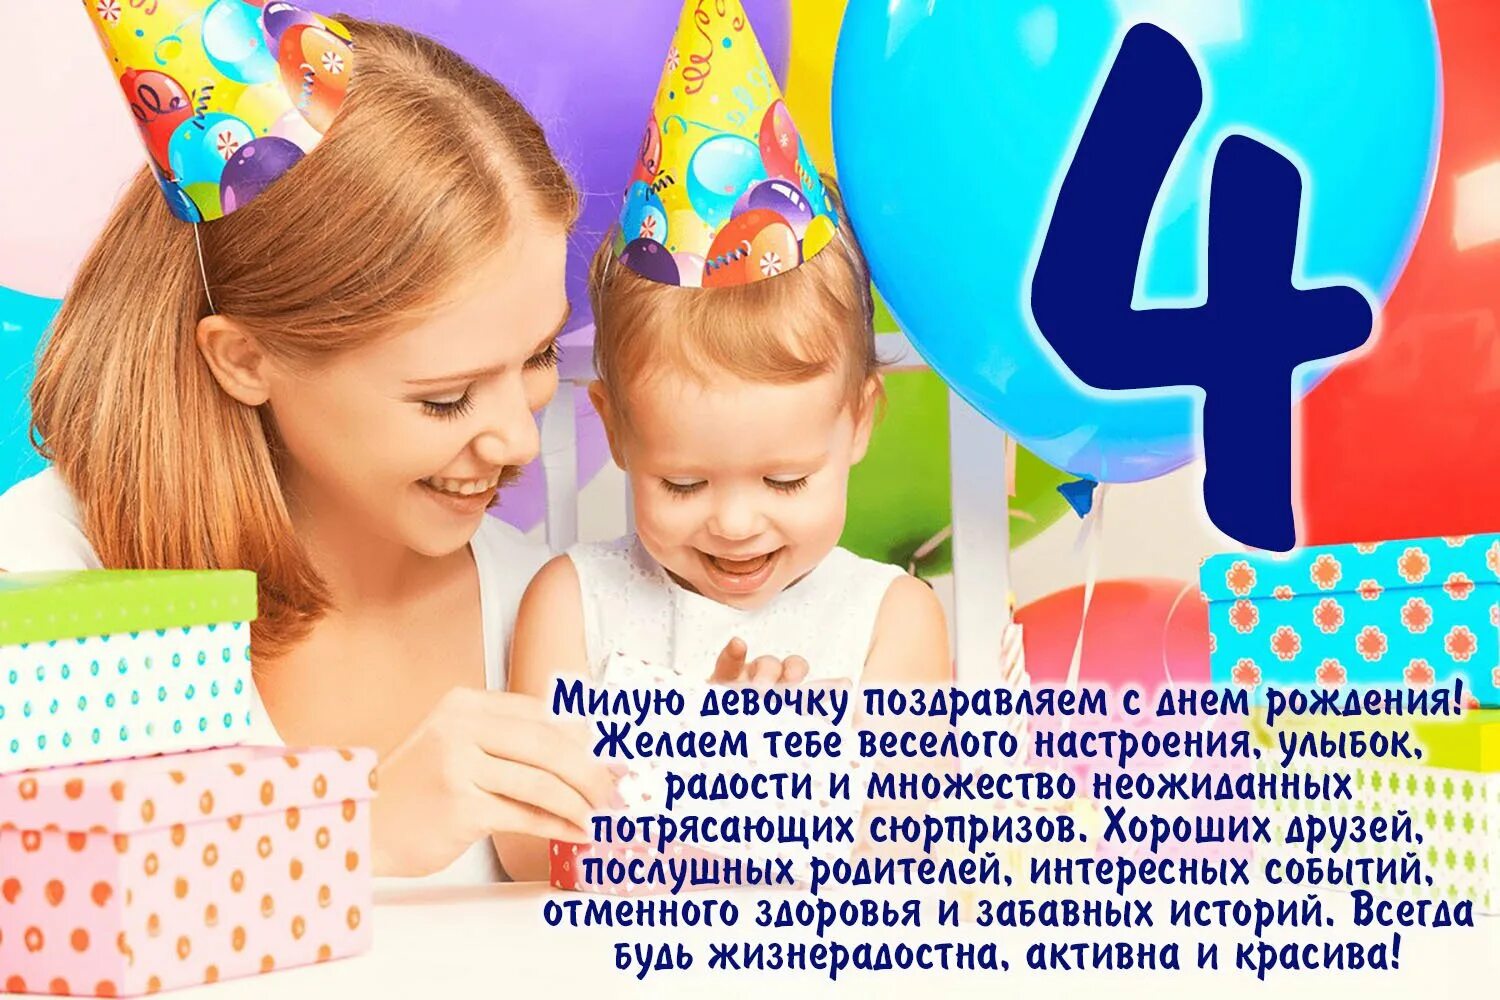 День рождения 4 февраля. С днем рождения девочк4 года. С днём рождения дныочке 4 года. С днём рождения 4 года девочке. Поздравление с 4 летием девочке.